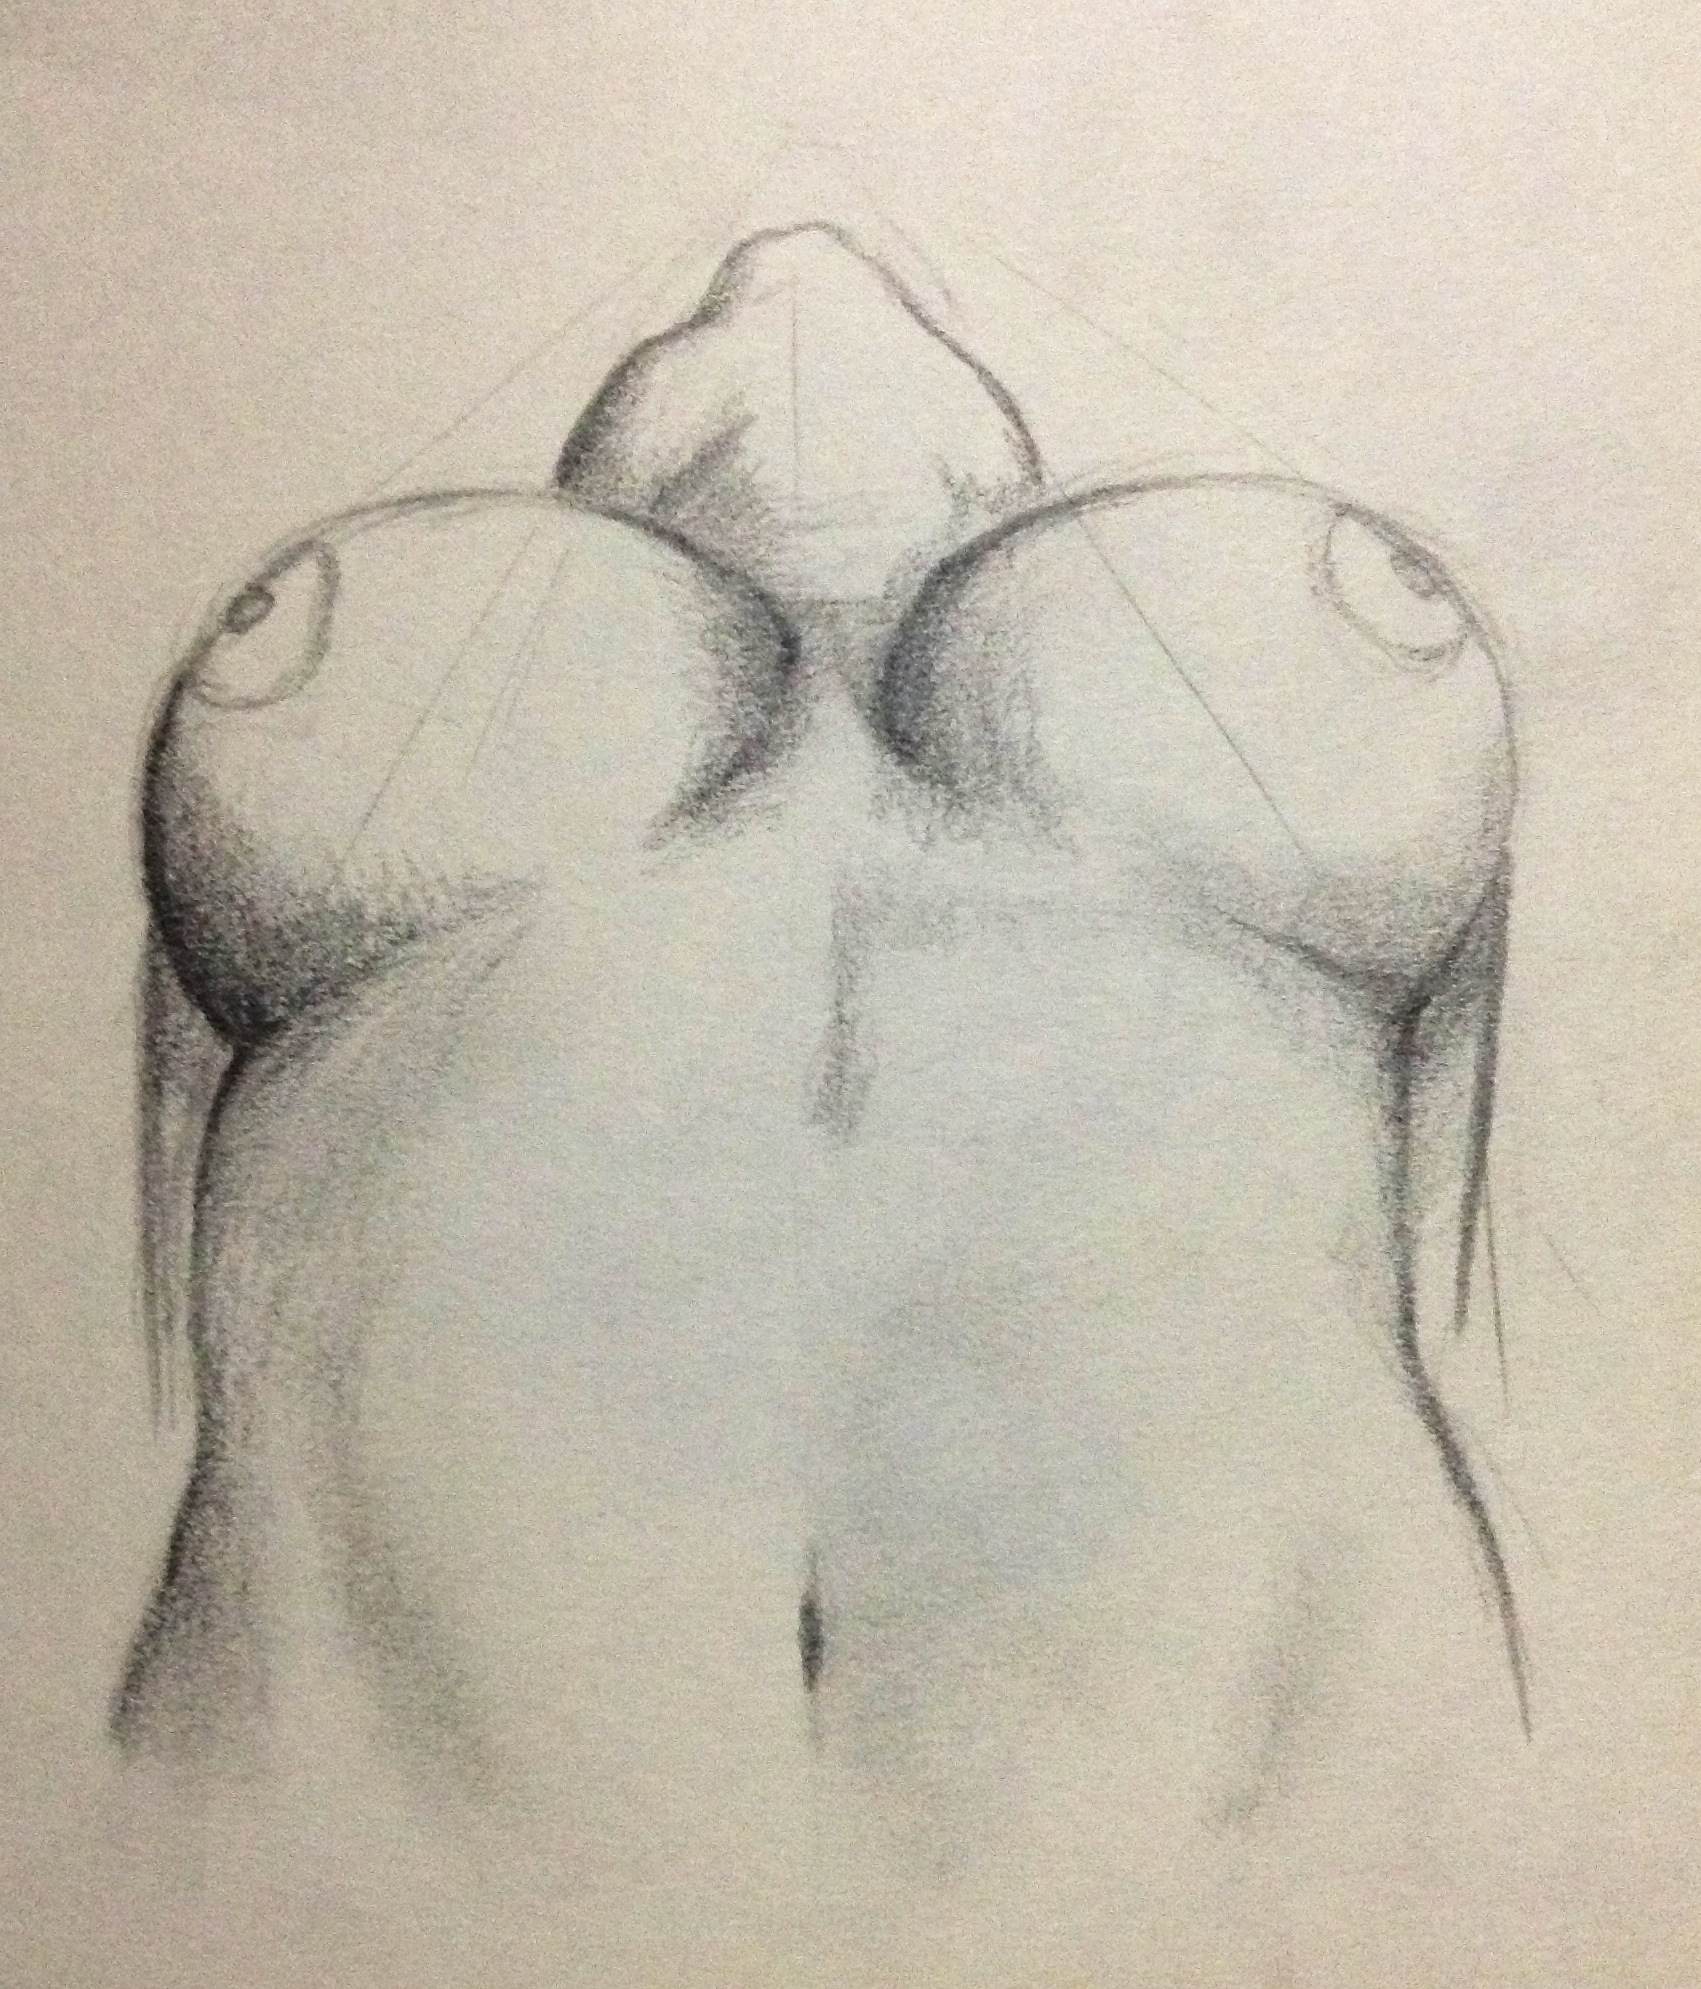 Nude Sketches - Pencil sketches nude women.